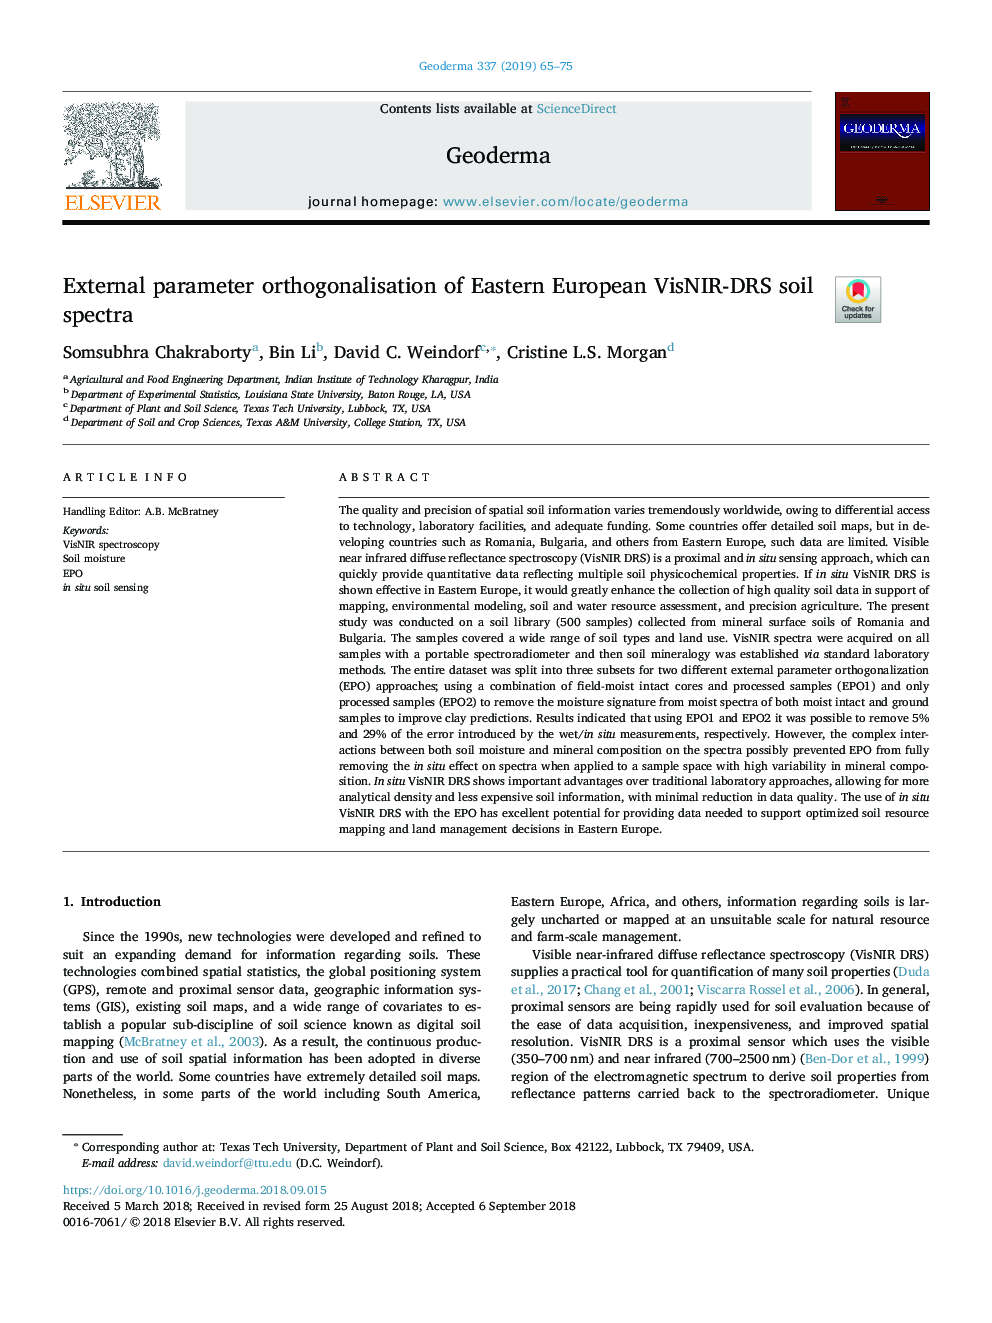 External parameter orthogonalisation of Eastern European VisNIR-DRS soil spectra